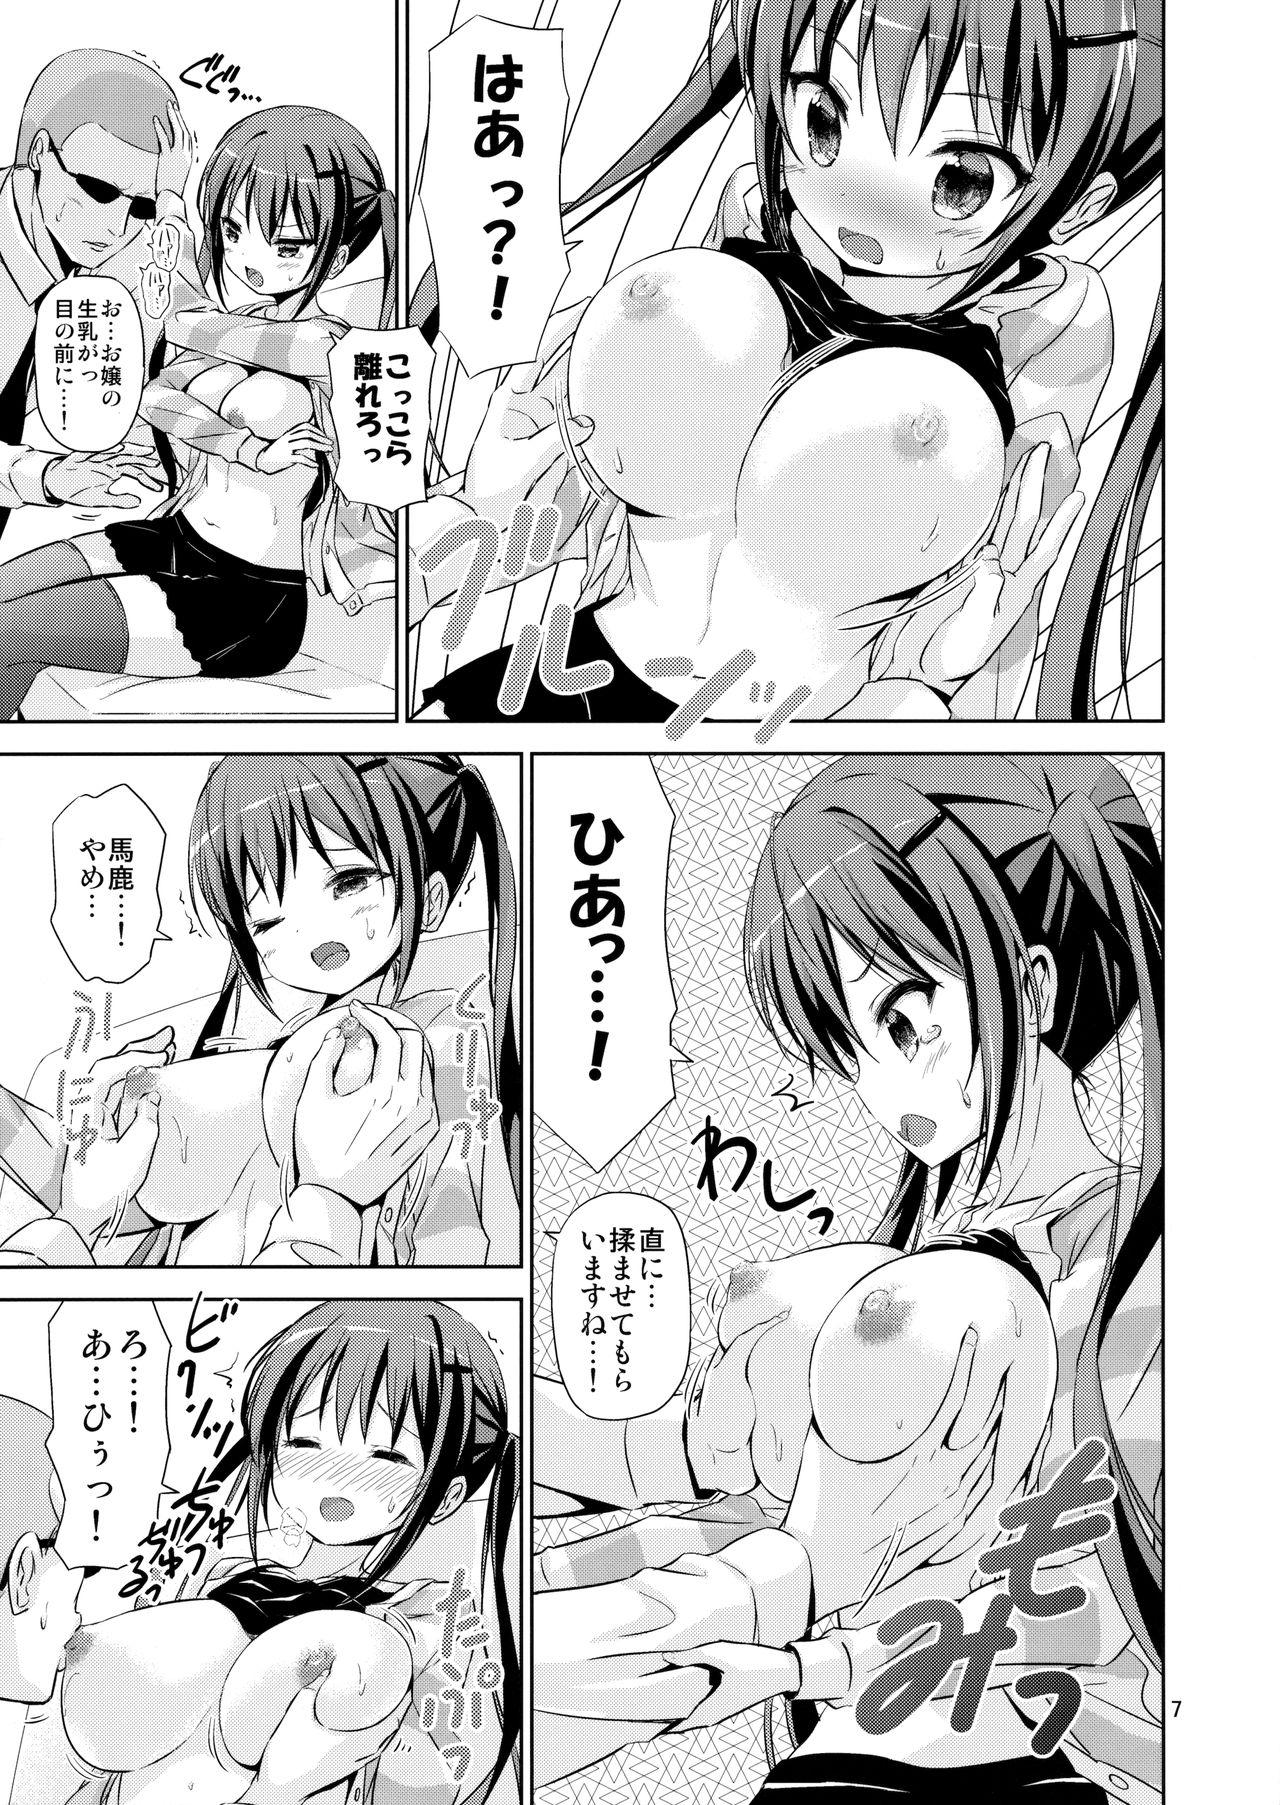 Hardcore Sex GUDE - Gochuumon wa usagi desu ka Namorada - Page 6